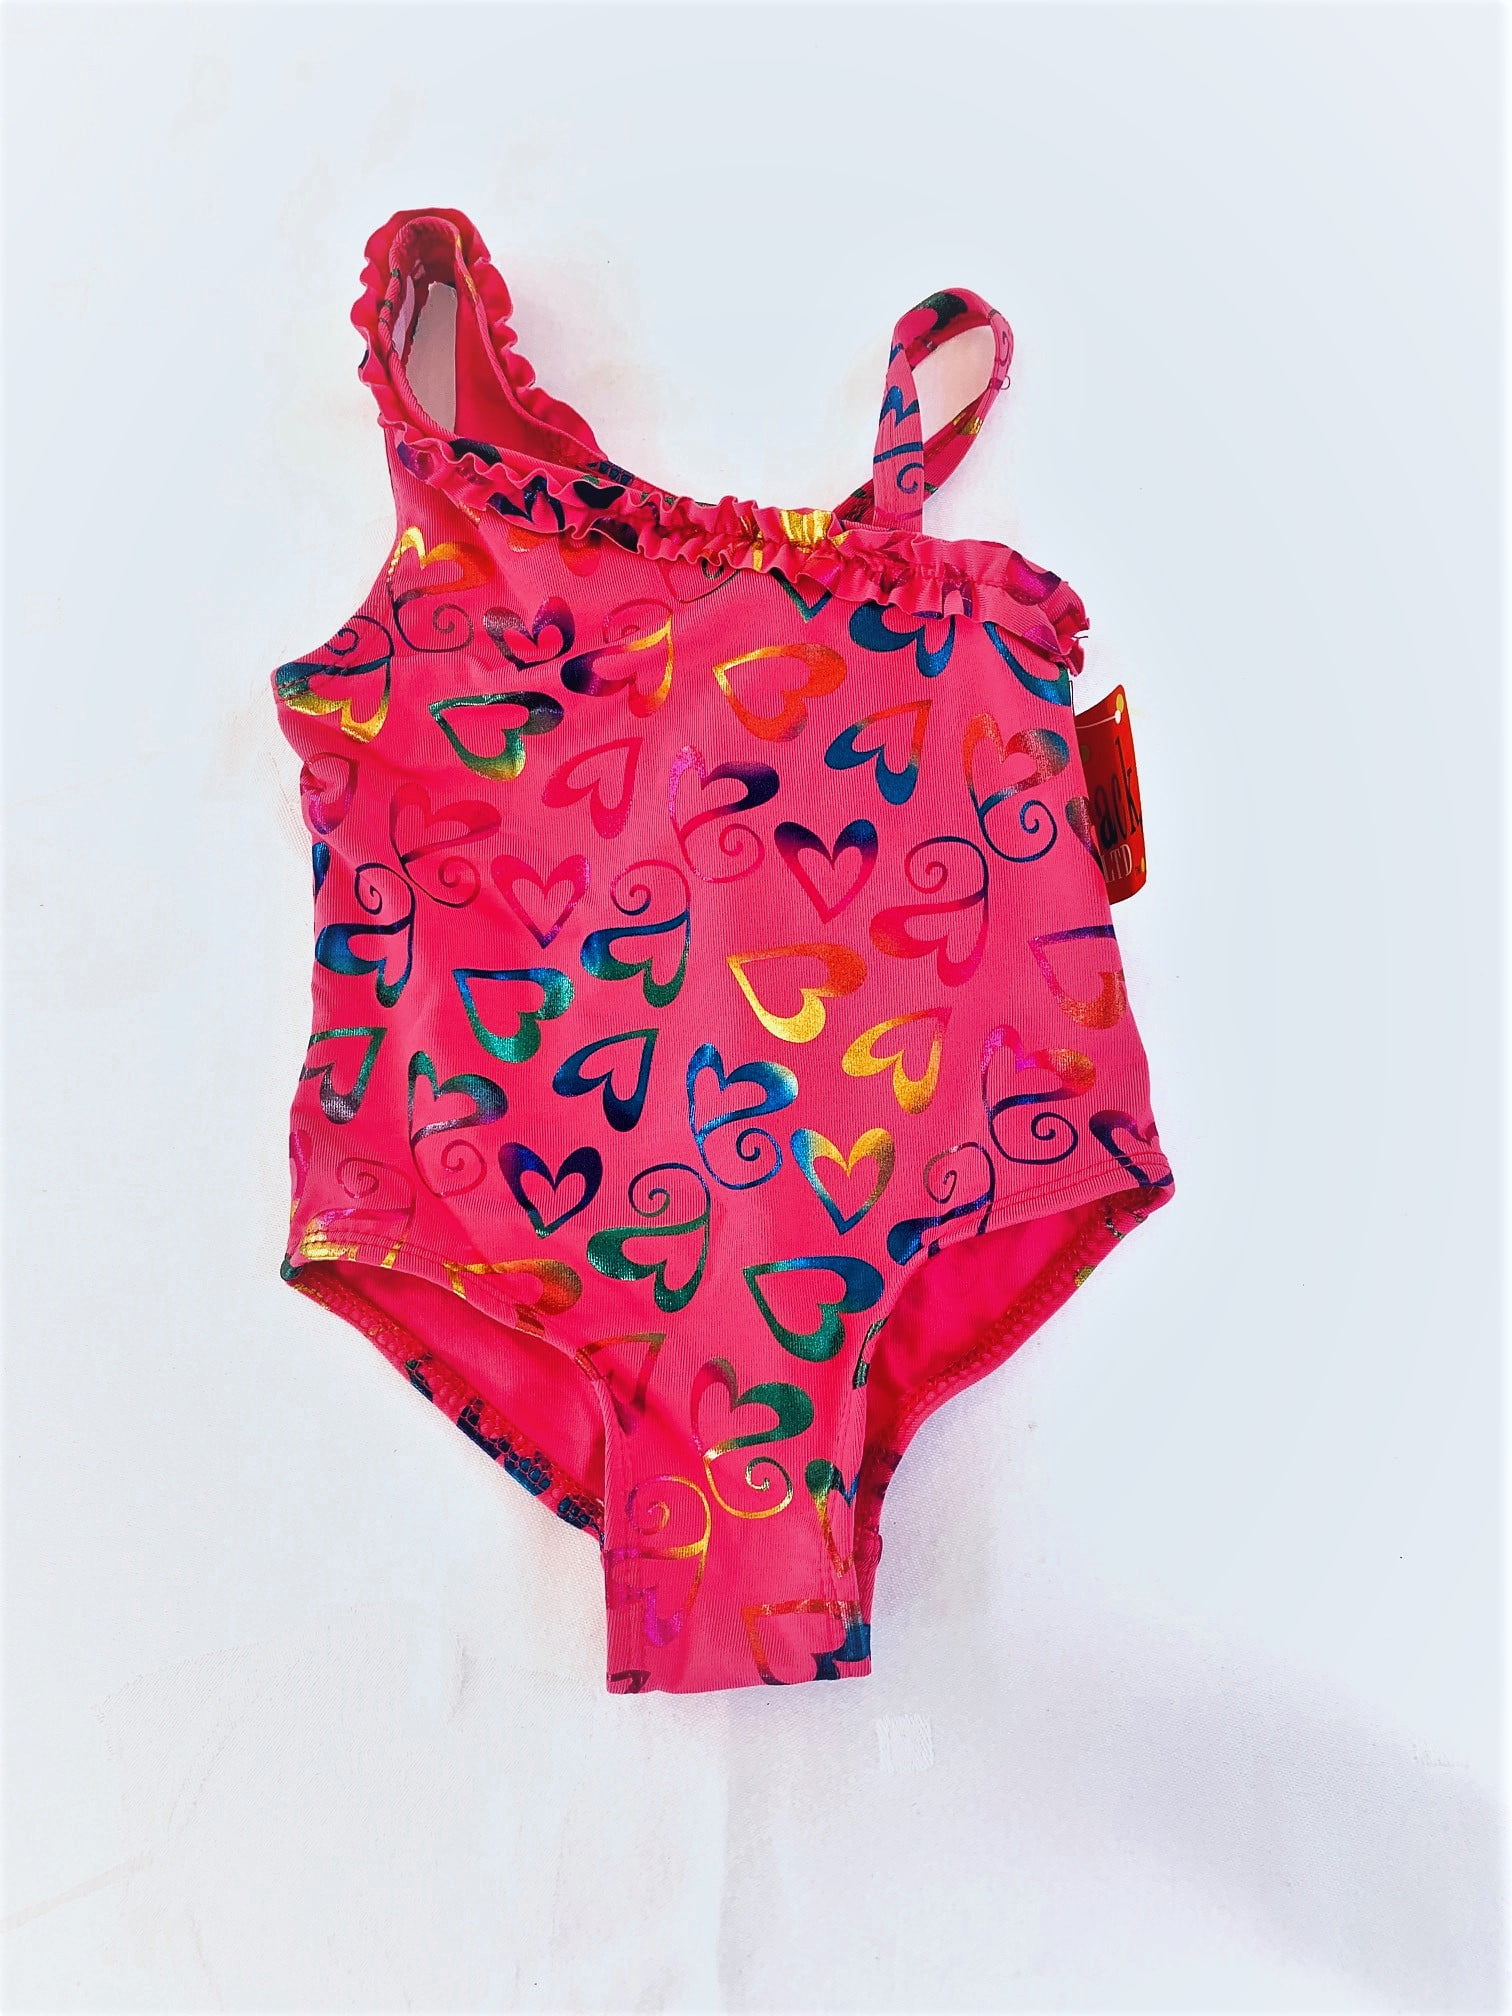 Penelope Mack Toddler Girls Red Pink White Stripe 2 Pc Swimsuit Tankini Bikini 